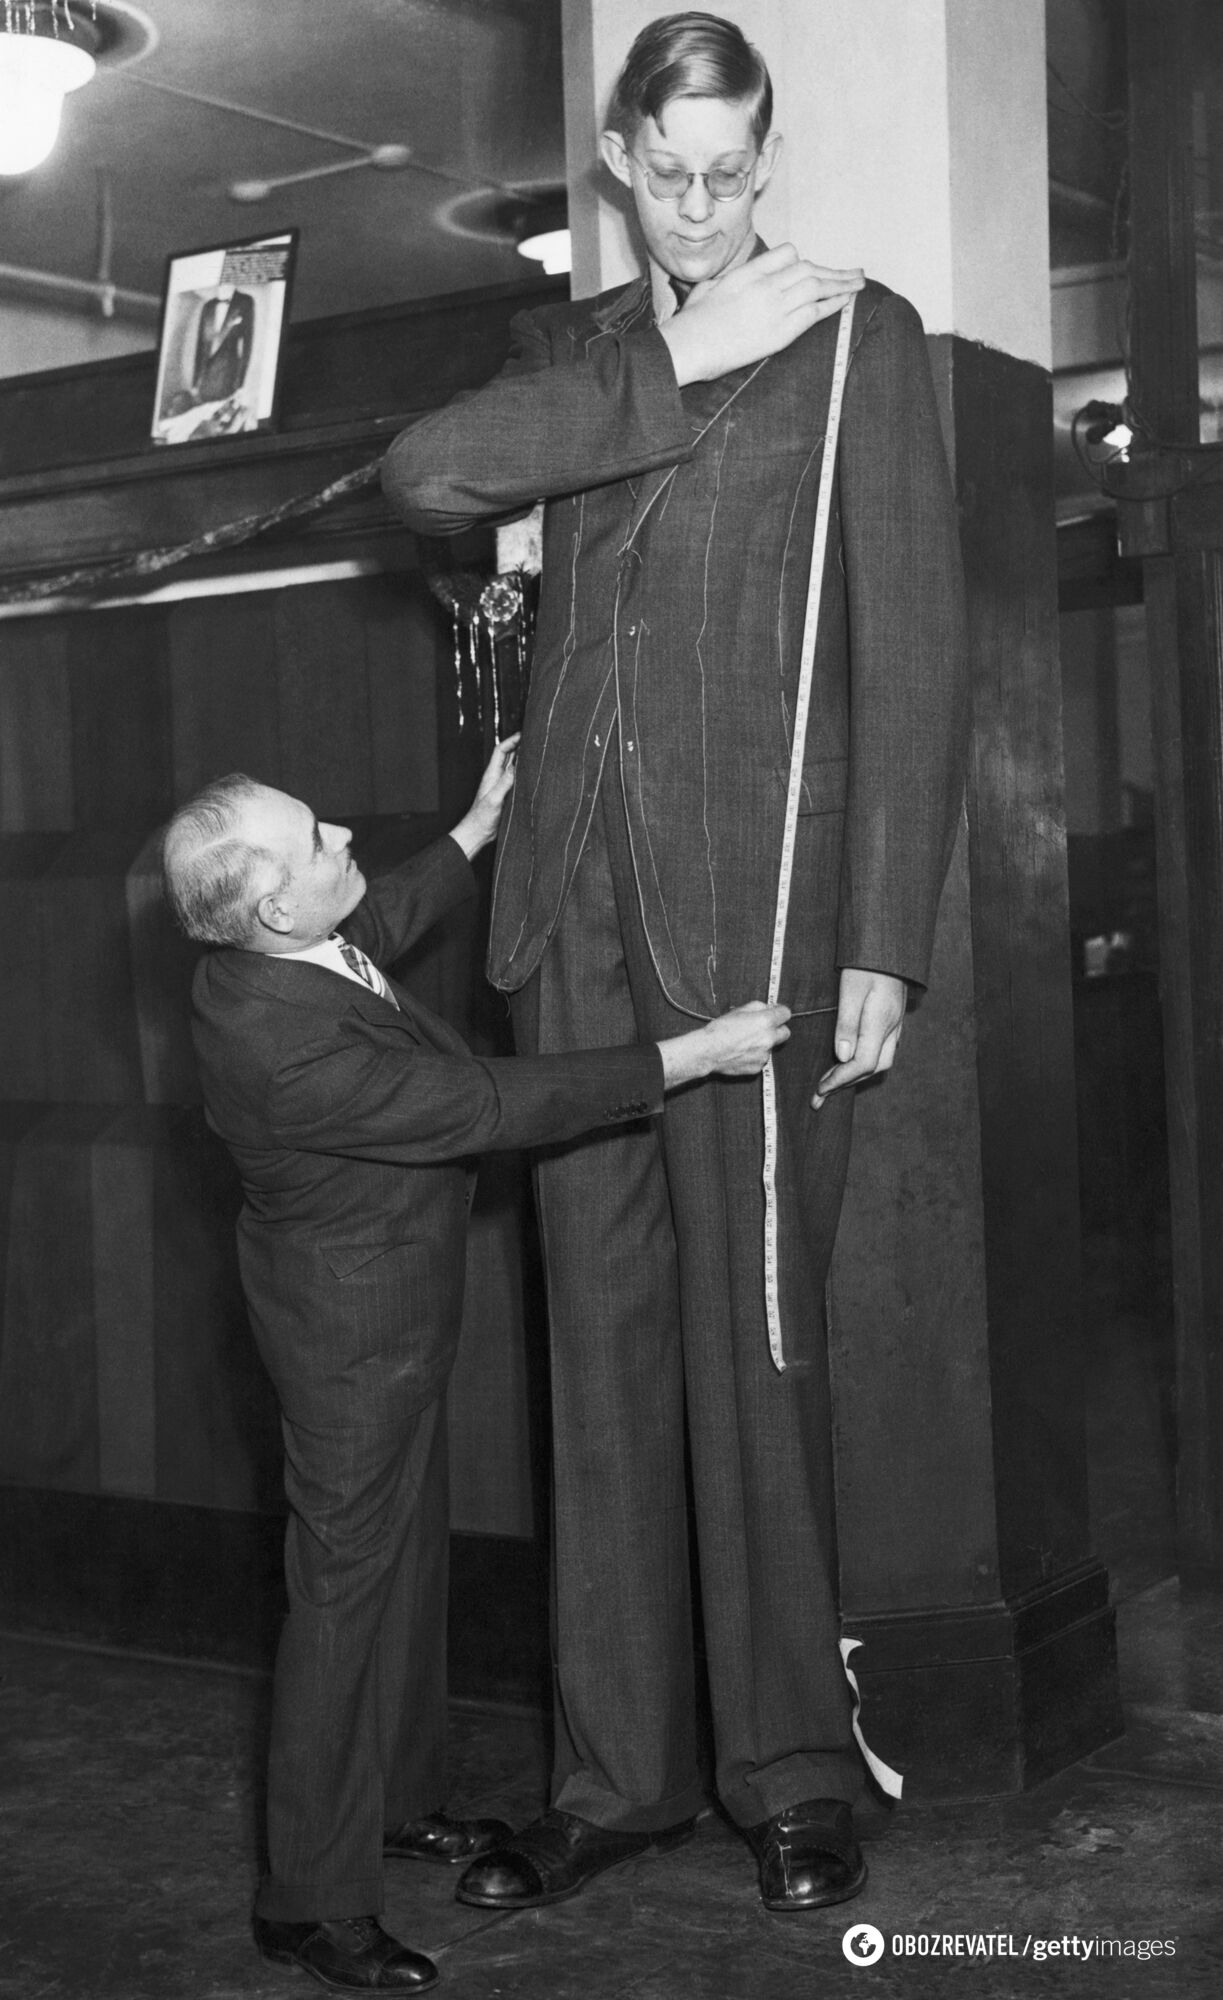 Роберт Першинг Уодлоу – самый высокий человек в истории человечества